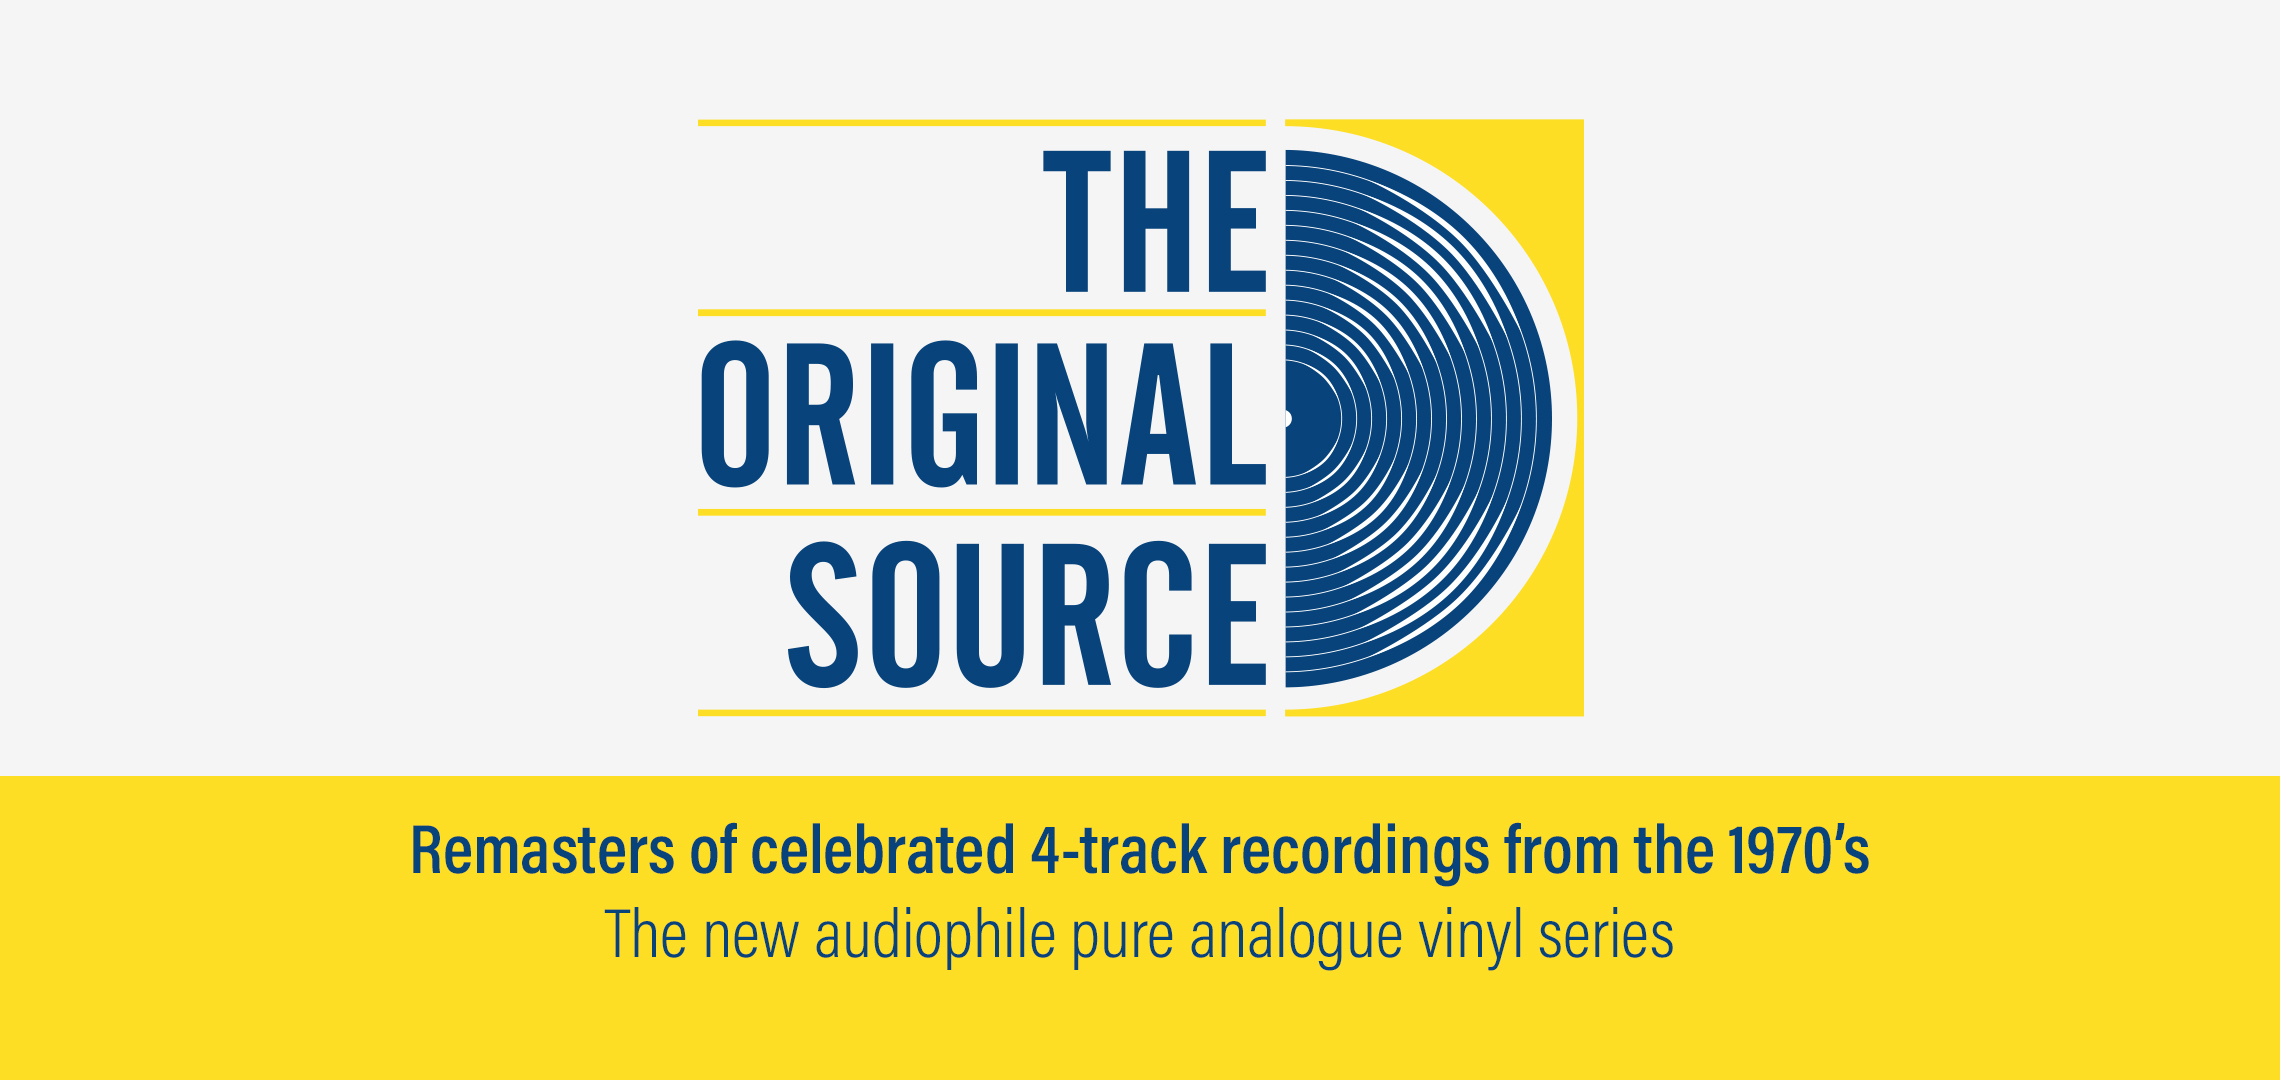 Rewriting History: Deutsche Grammophon's Groundbreaking “Original